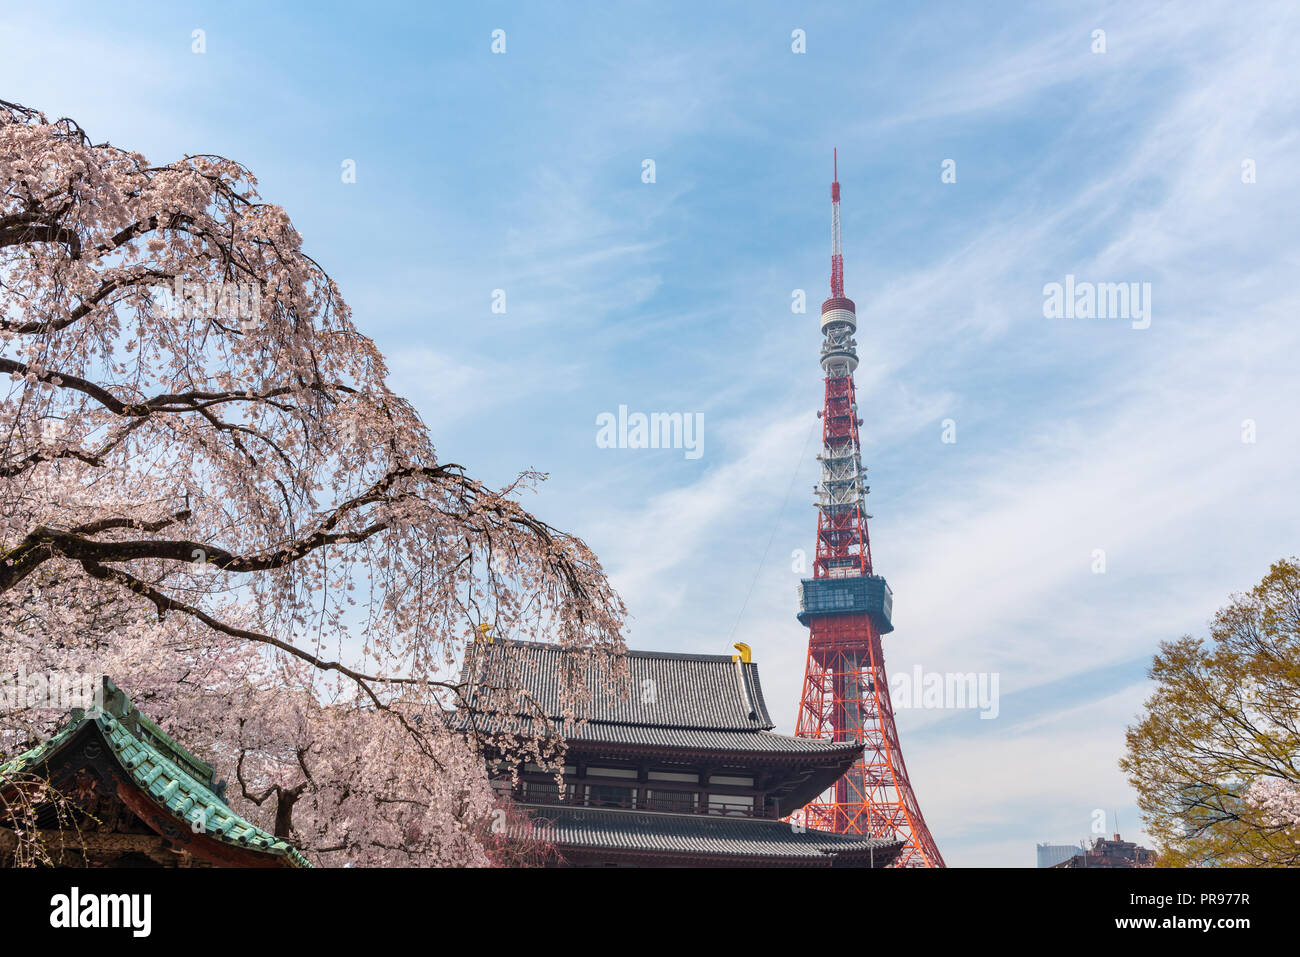 Tokyo tower and Sakura Cherry blossom in spring season at Tokyo, Japan. Stock Photo